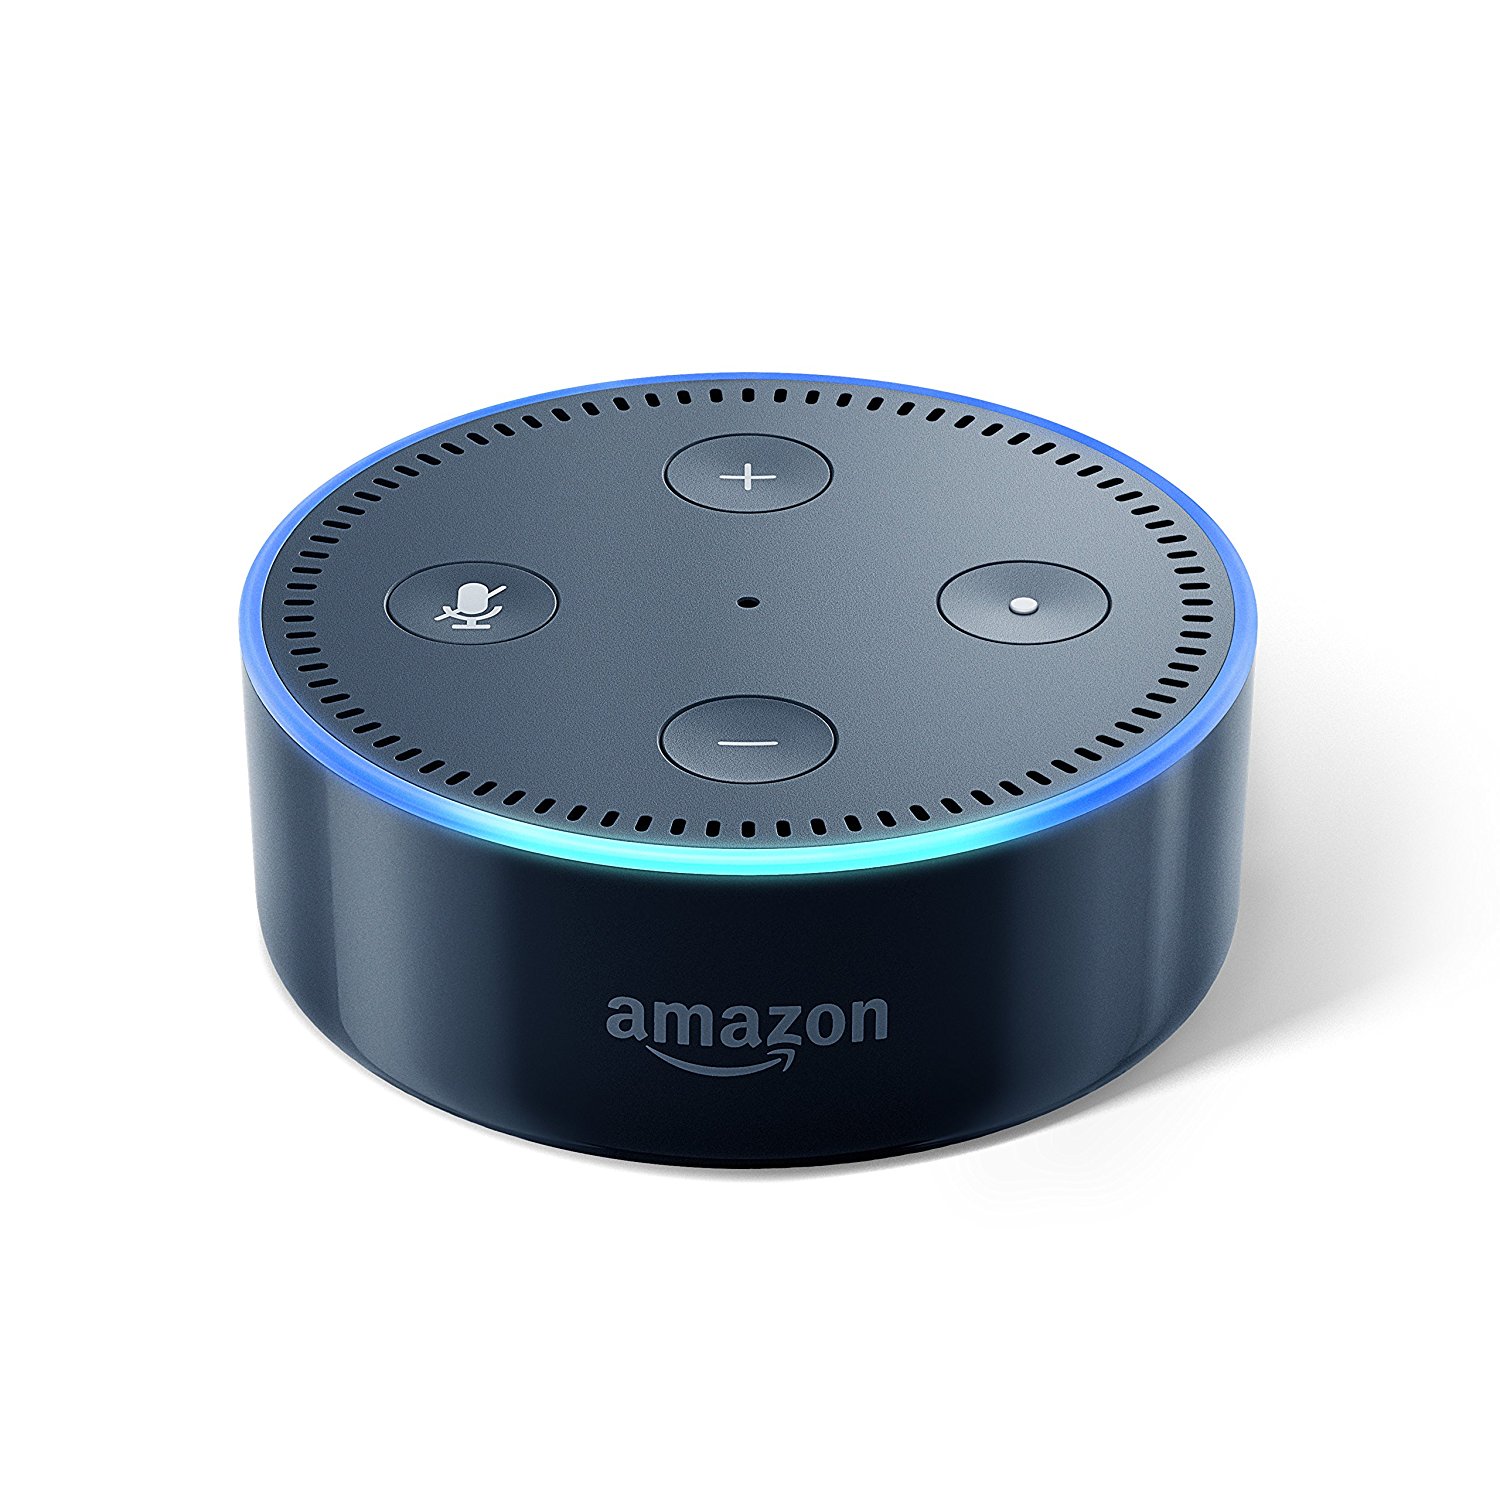 Amazon、｢Echo Dot｣を1,000円オフで販売する父の日セールを開催中 − ｢Fire 7 タブレット｣や｢Kindle｣もセール中